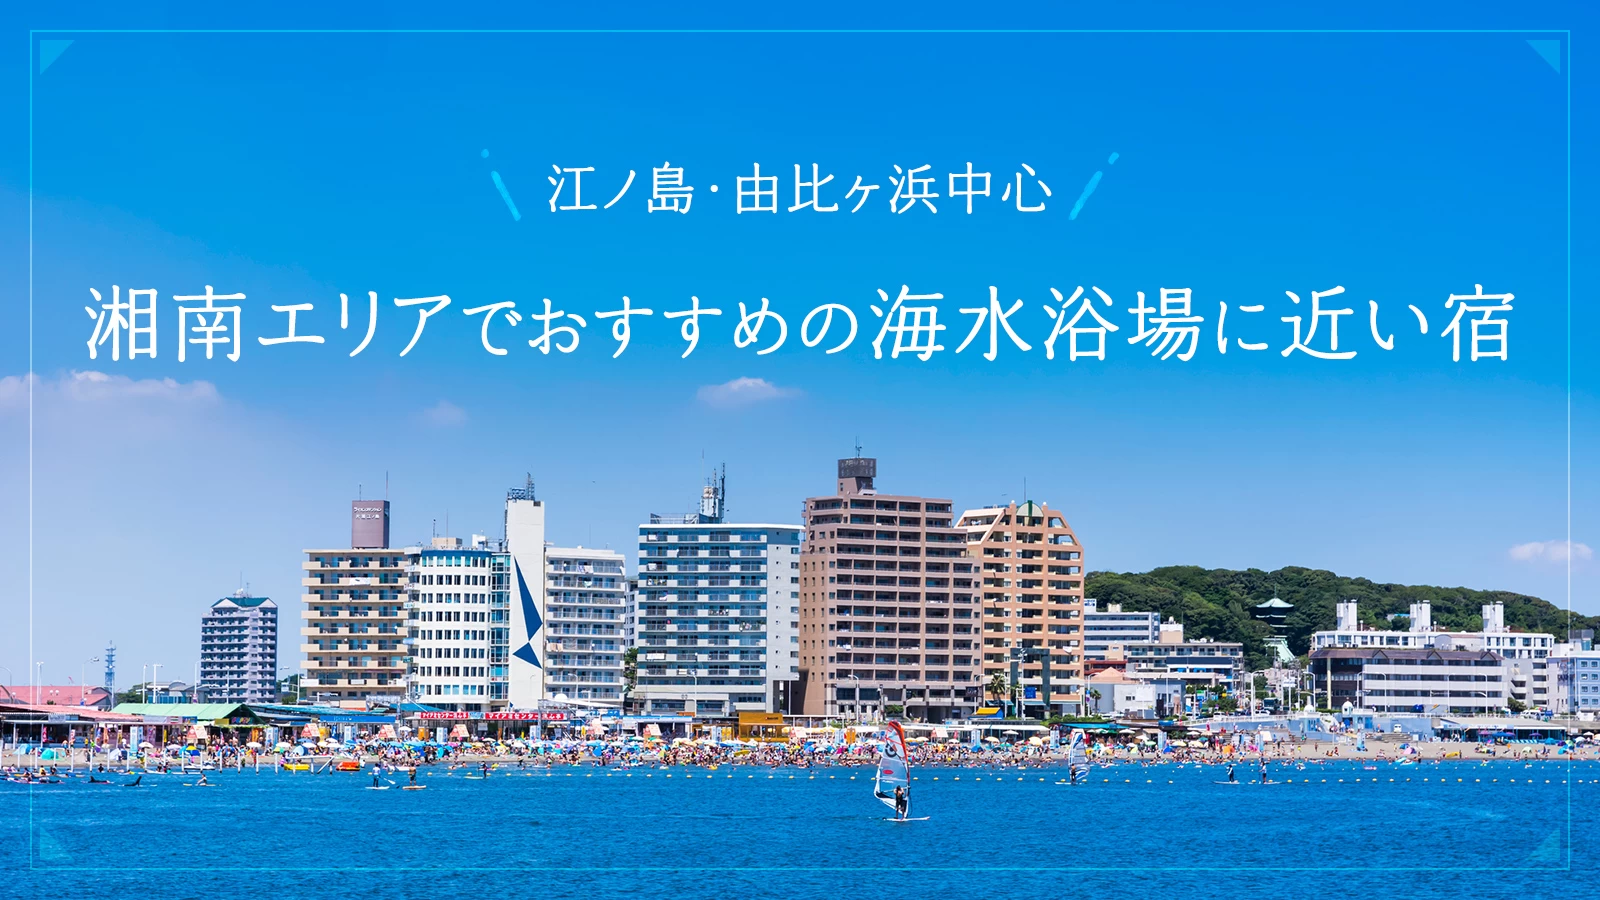 【神奈川】江ノ島・由比ヶ浜を中心とした湘南エリアでおすすめの海水浴場に近い宿4選